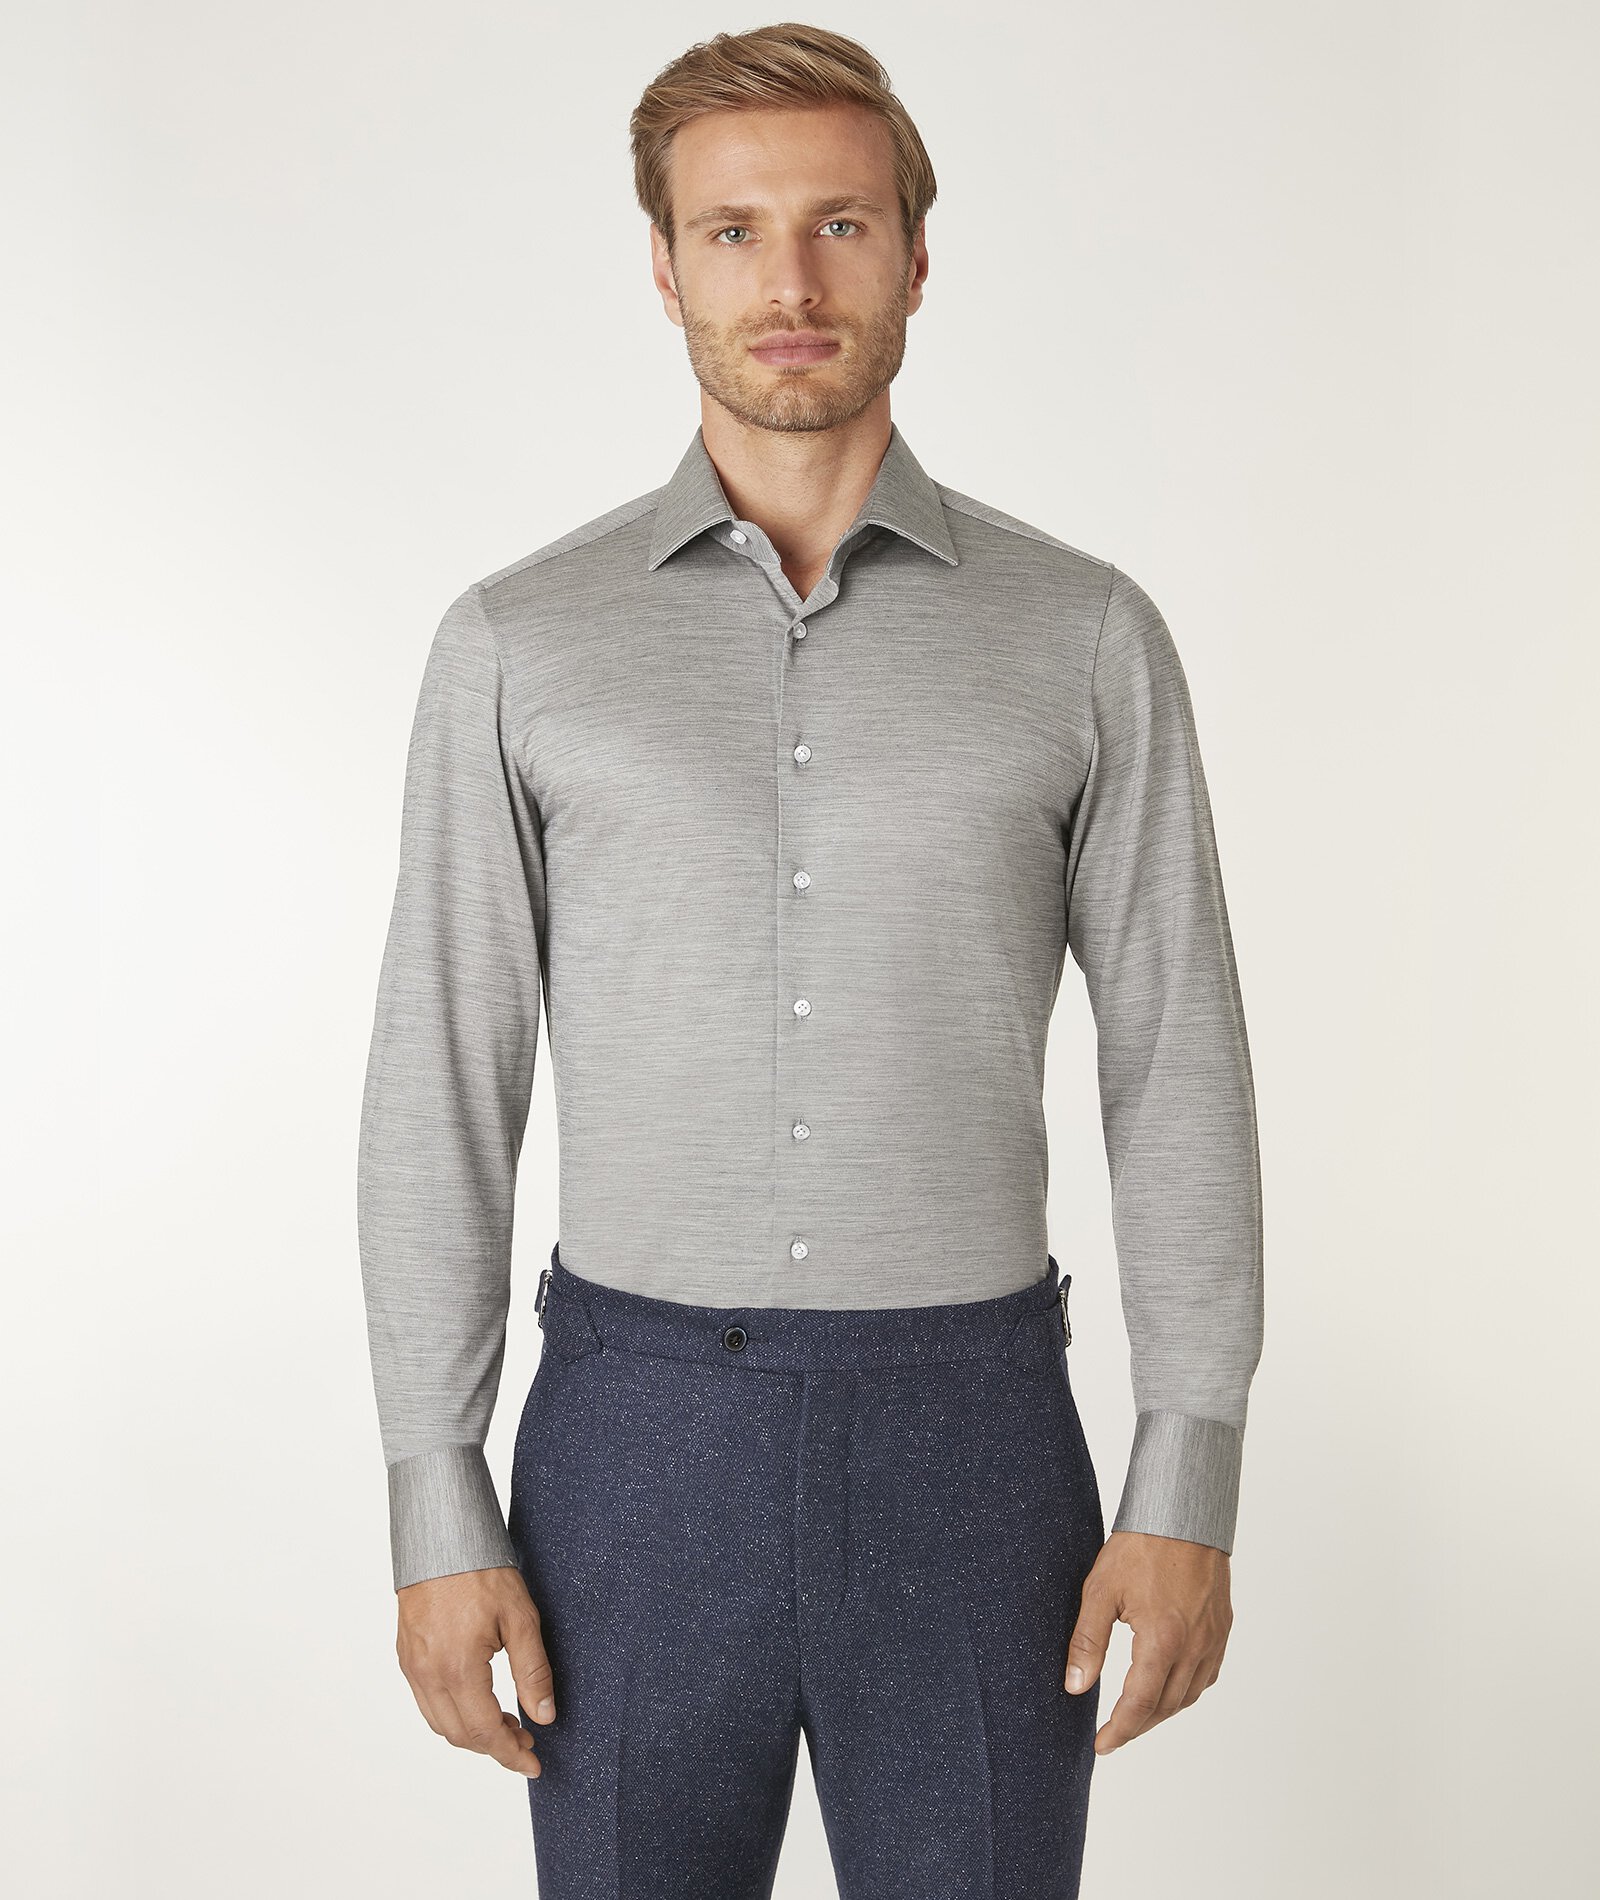 Image of Camicia da uomo su misura, Reda Active, Lana Jersey Grigio, Quattro Stagioni | Lanieri